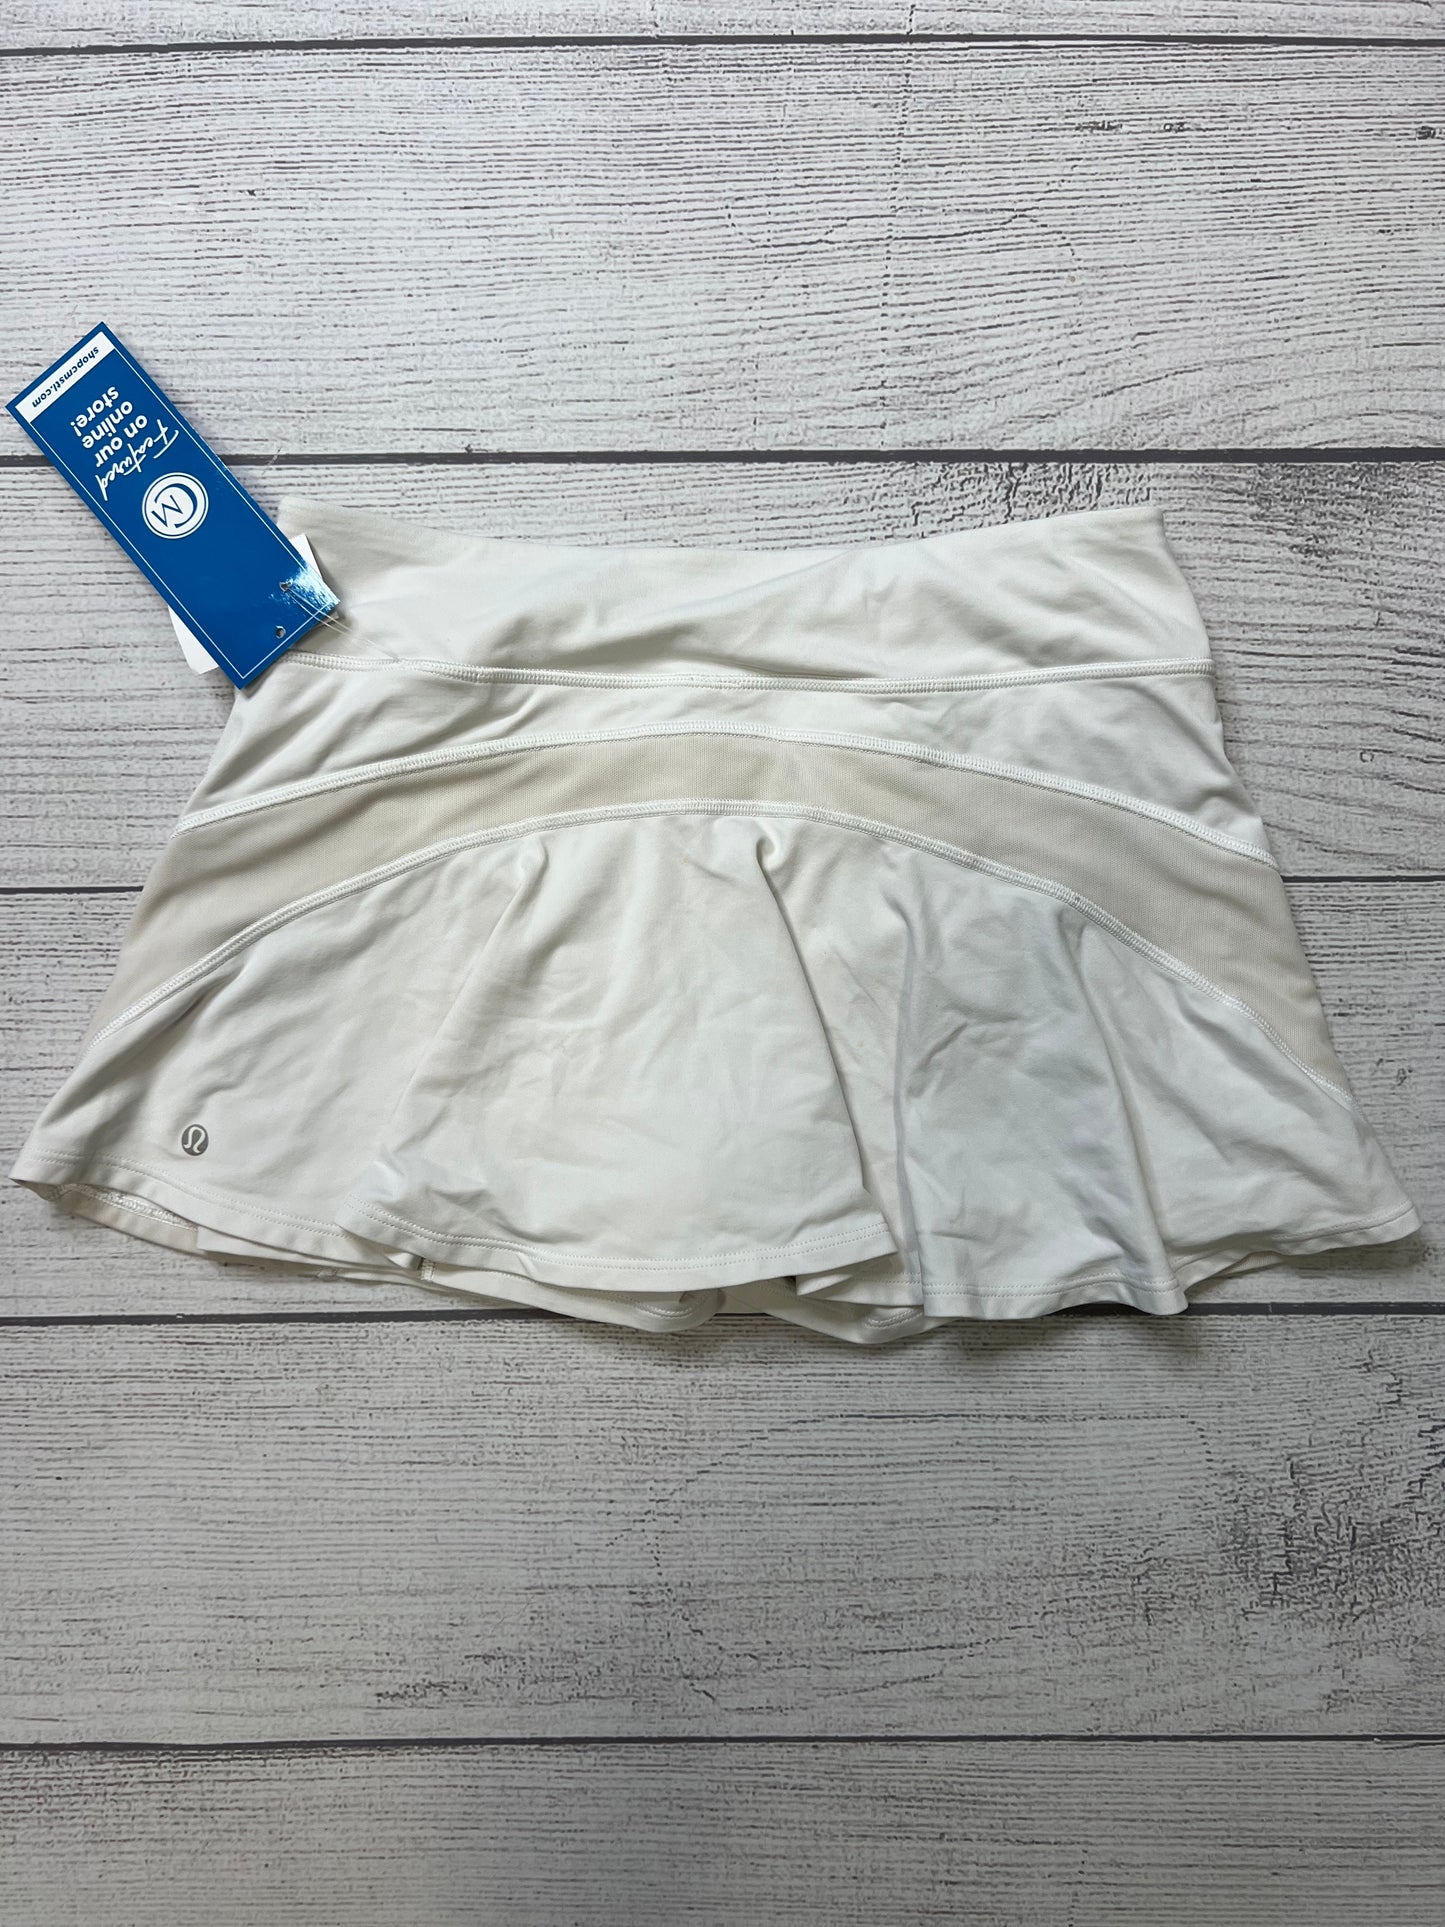 White Athletic Skirt Skort Lululemon, Size S